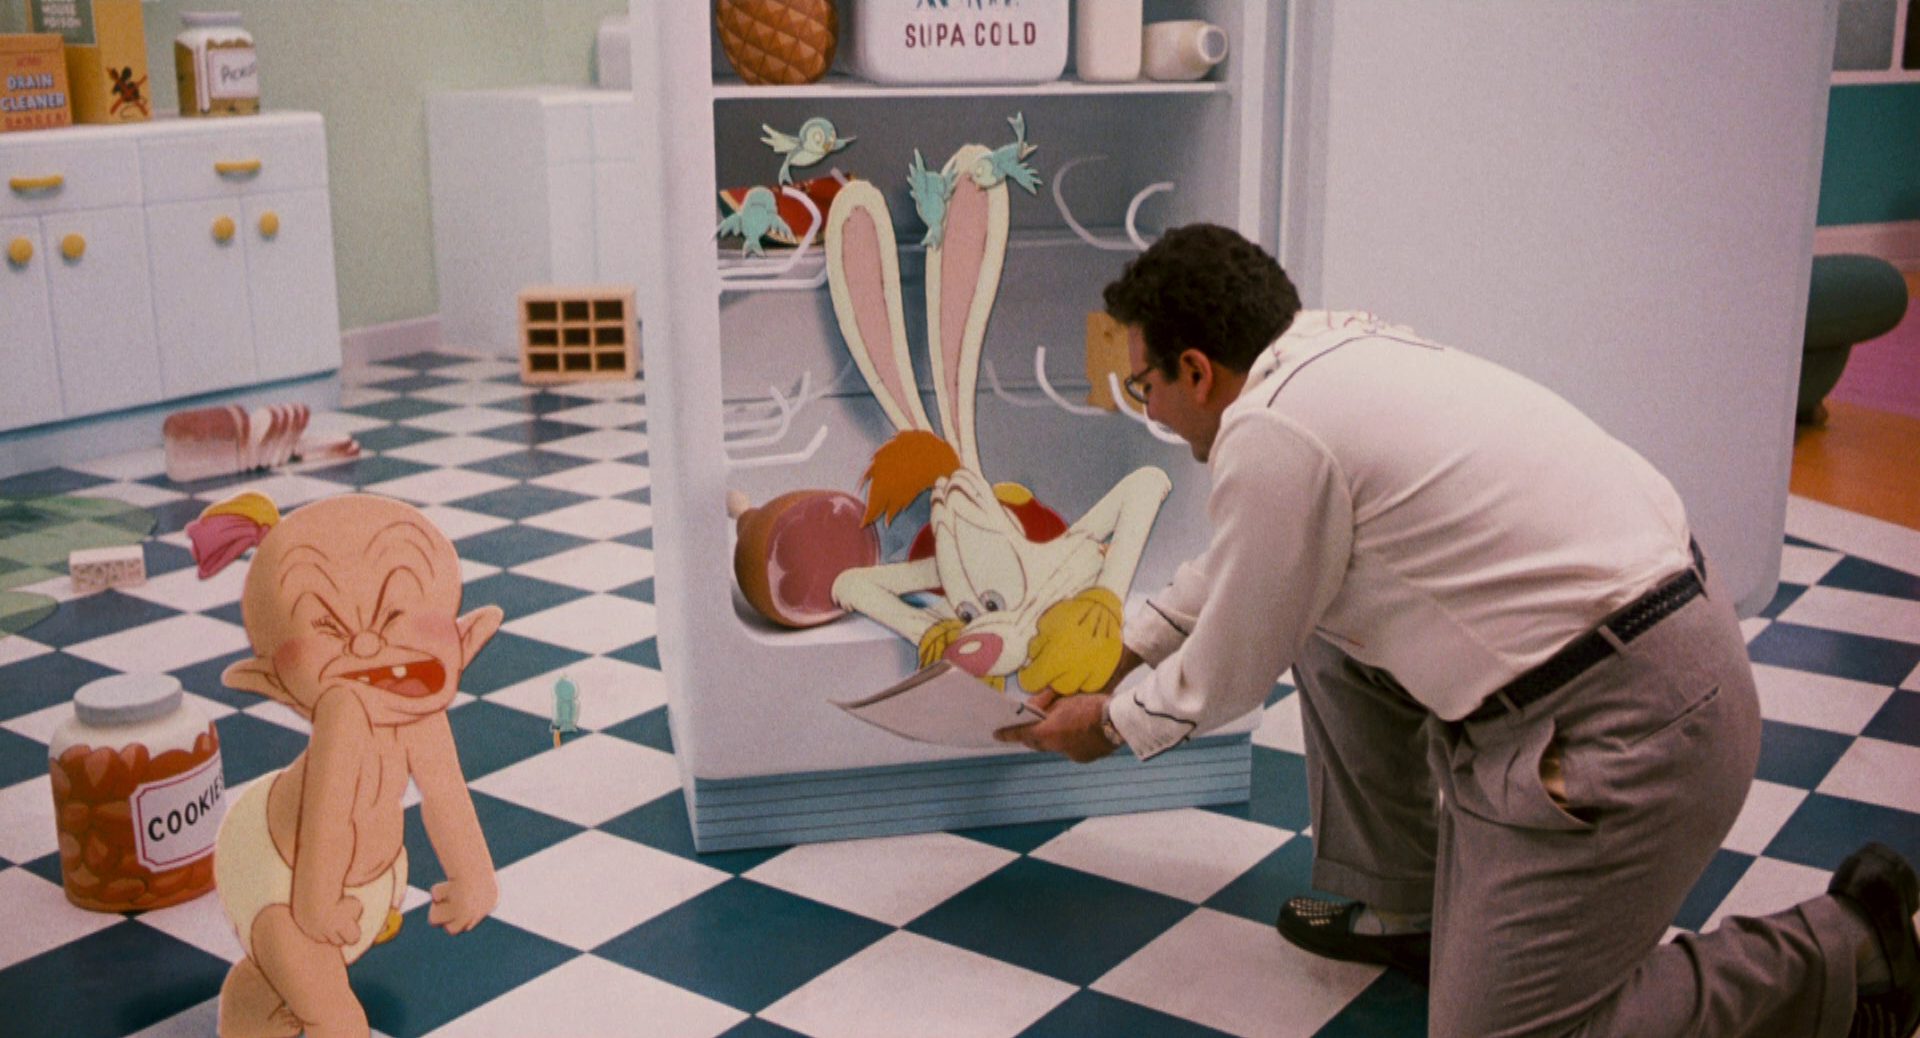 Dreharbeiten in Cartoon-Optik mit Roger Rabbit, der in einem Kühlschrank sitzt und dem ein Regisseur in Realfilm-Optik ein Drehbuch hinhält, während sich am Rand der Szene Baby Herman aufregt.